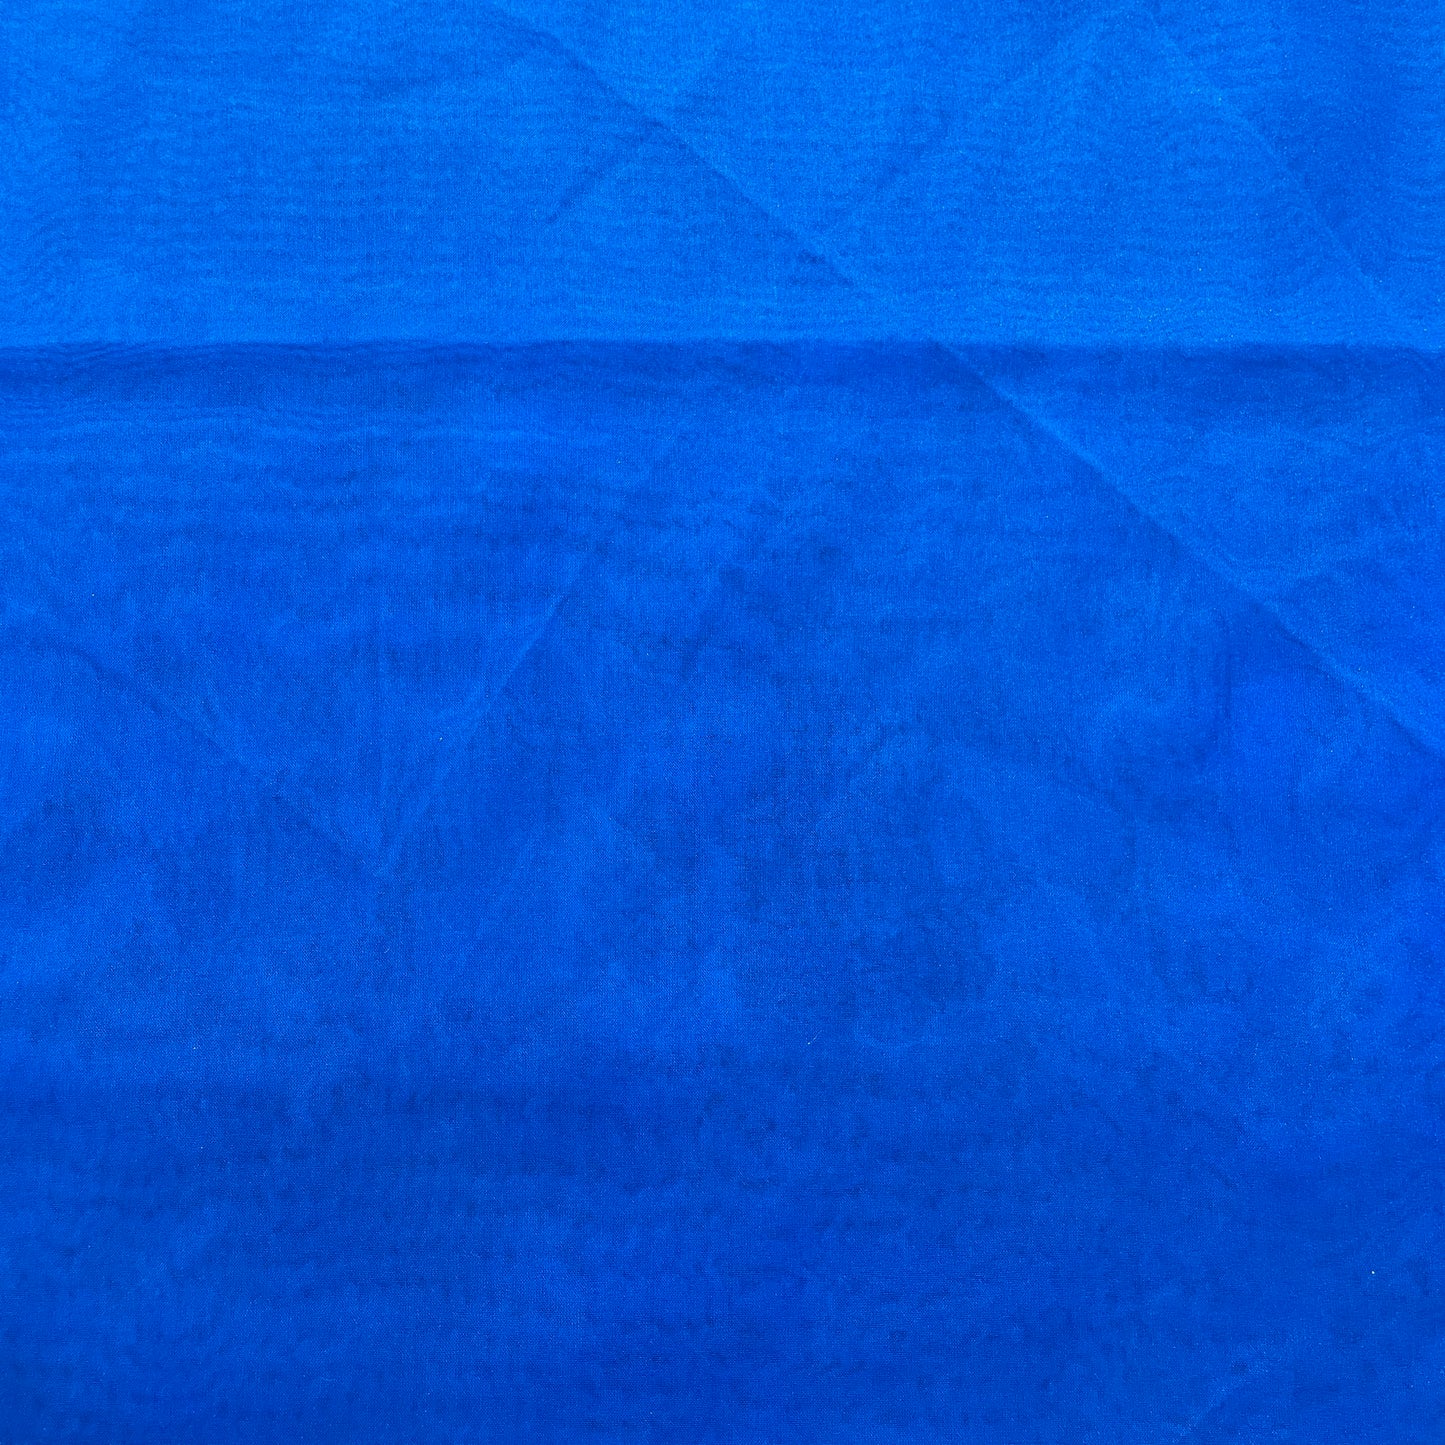 Exclusive Royal Blue Solid Organza Fabric